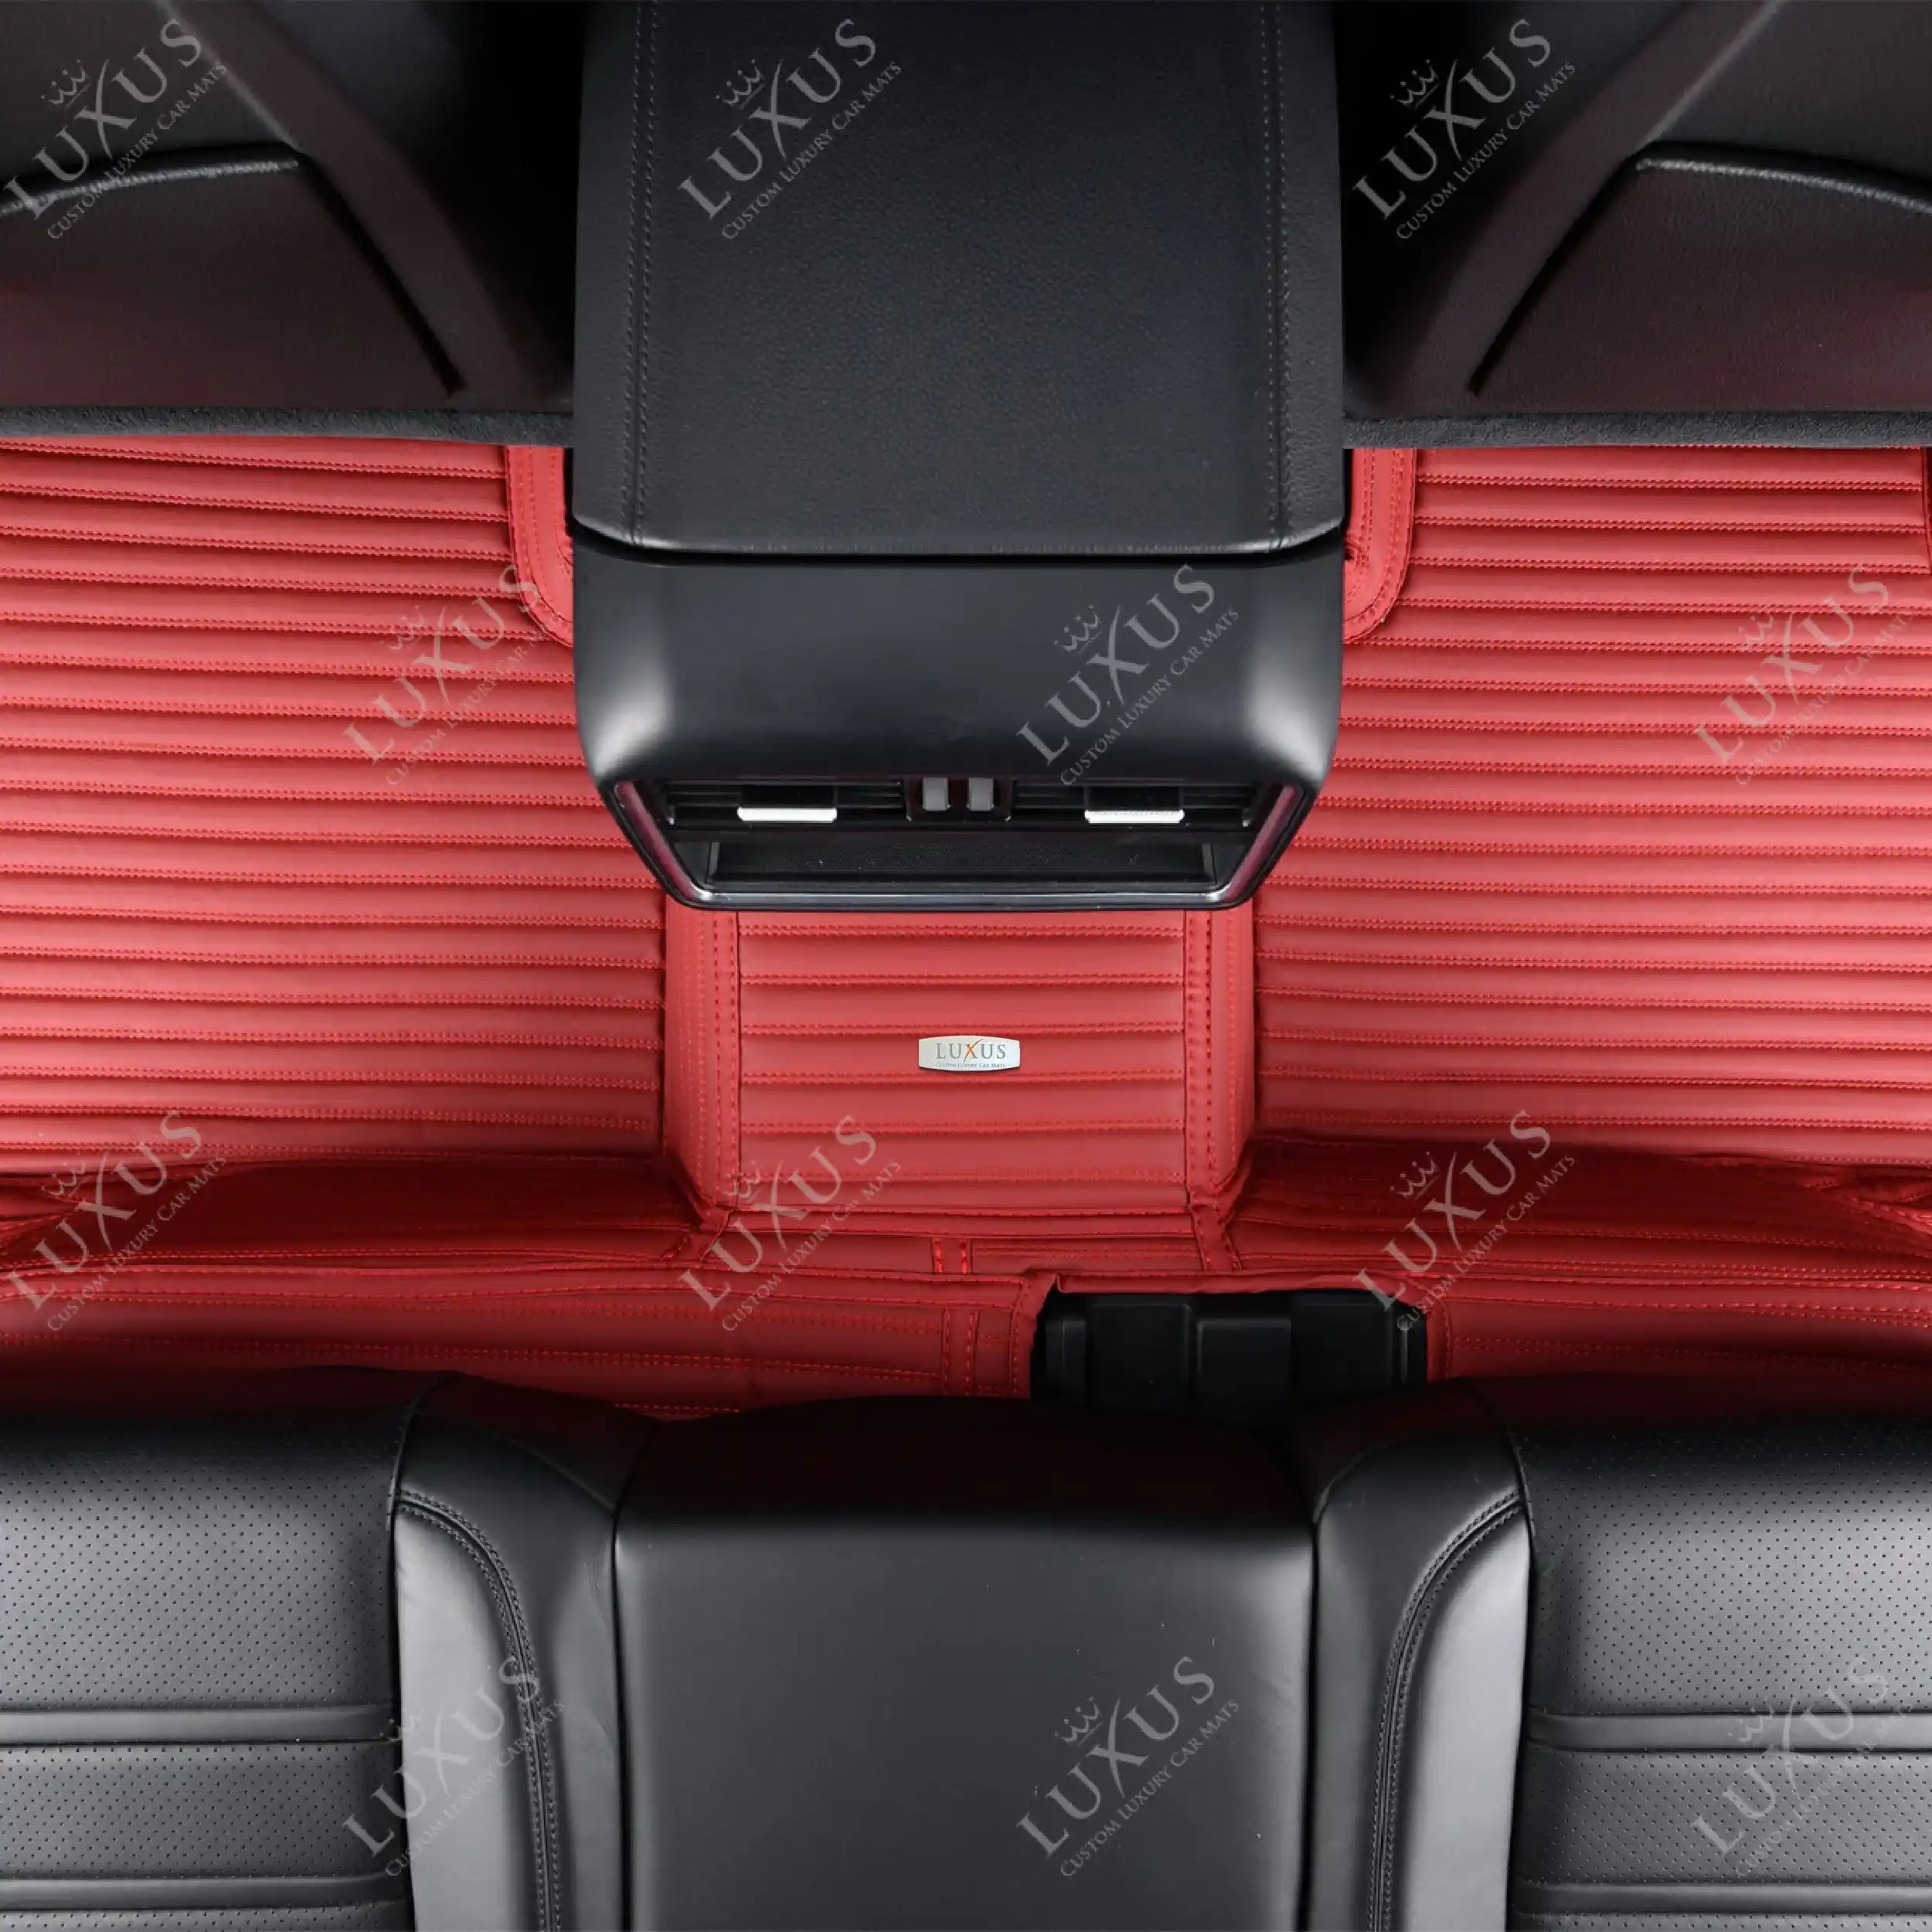 Luxus Car Mats™ - Juego de alfombrillas de lujo con rayas en rojo cereza